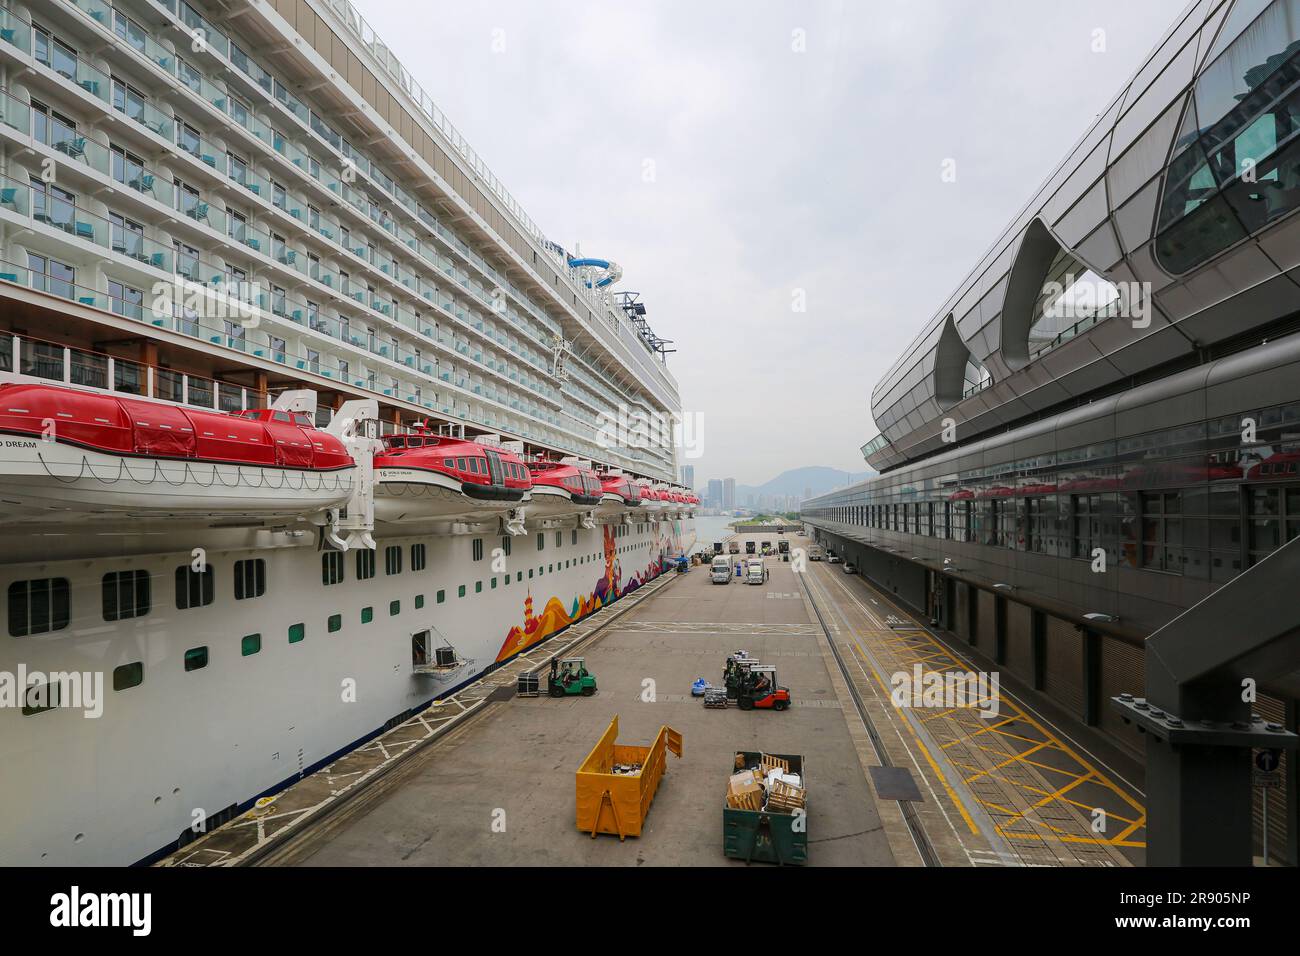 Le bateau de croisière géant World Dream a accosté à Hong Kong Kai Tak terminal, Chine, conteneurs à ordures I 2023 : MS Manara (Aroya Cruises) ligne de croisière saoudienne Banque D'Images